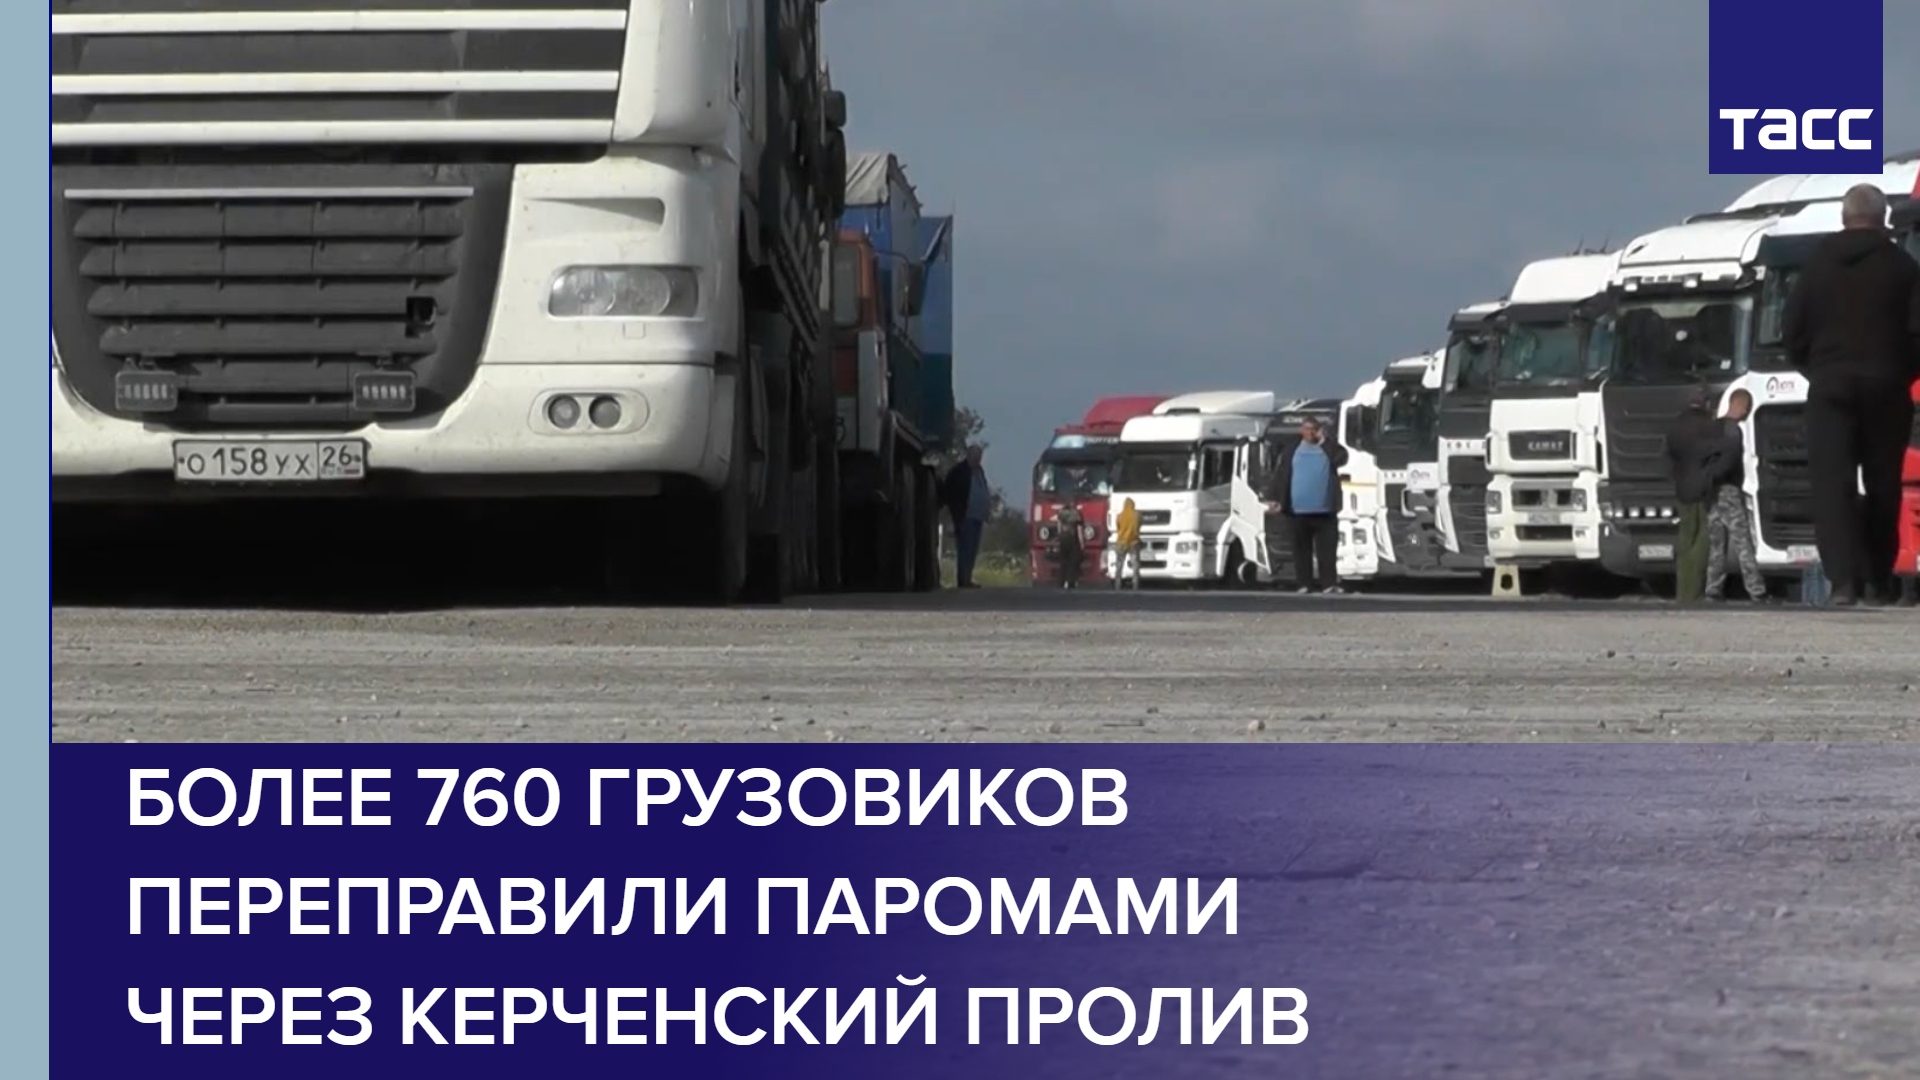 Более 760 грузовиков переправили паромами через Керченский пролив #shorts